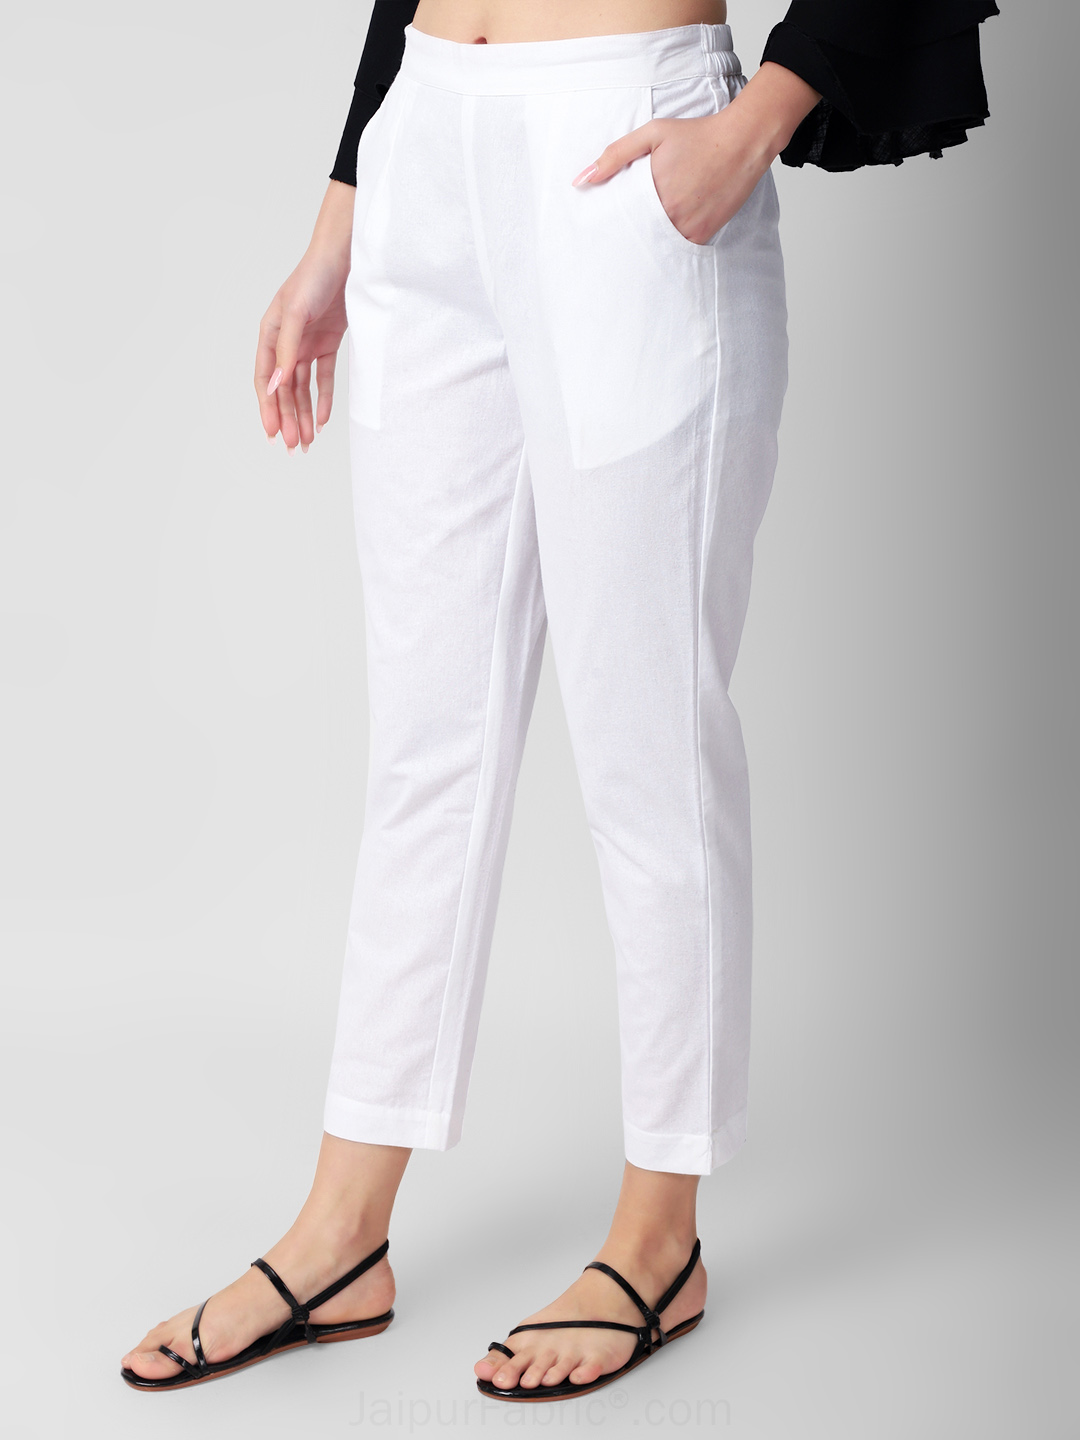 Women Fashionalbel Cotton Blend Trousers/Pants White